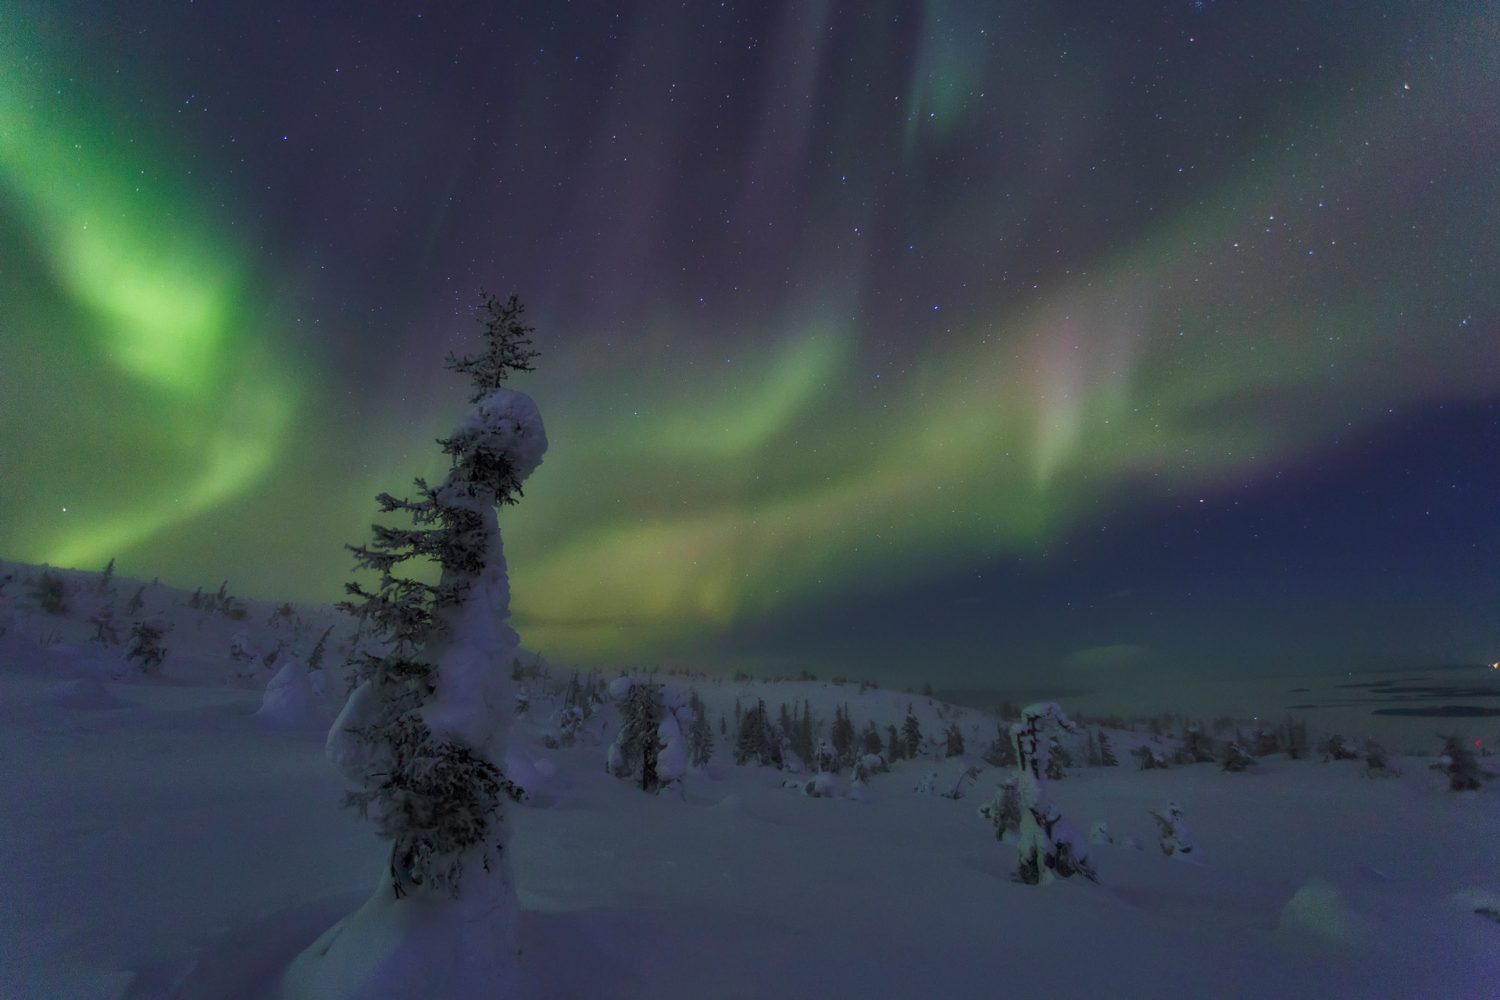 Bosque en invierno durante la noche con auroras boreales en el cielo. Yamal, Rusia